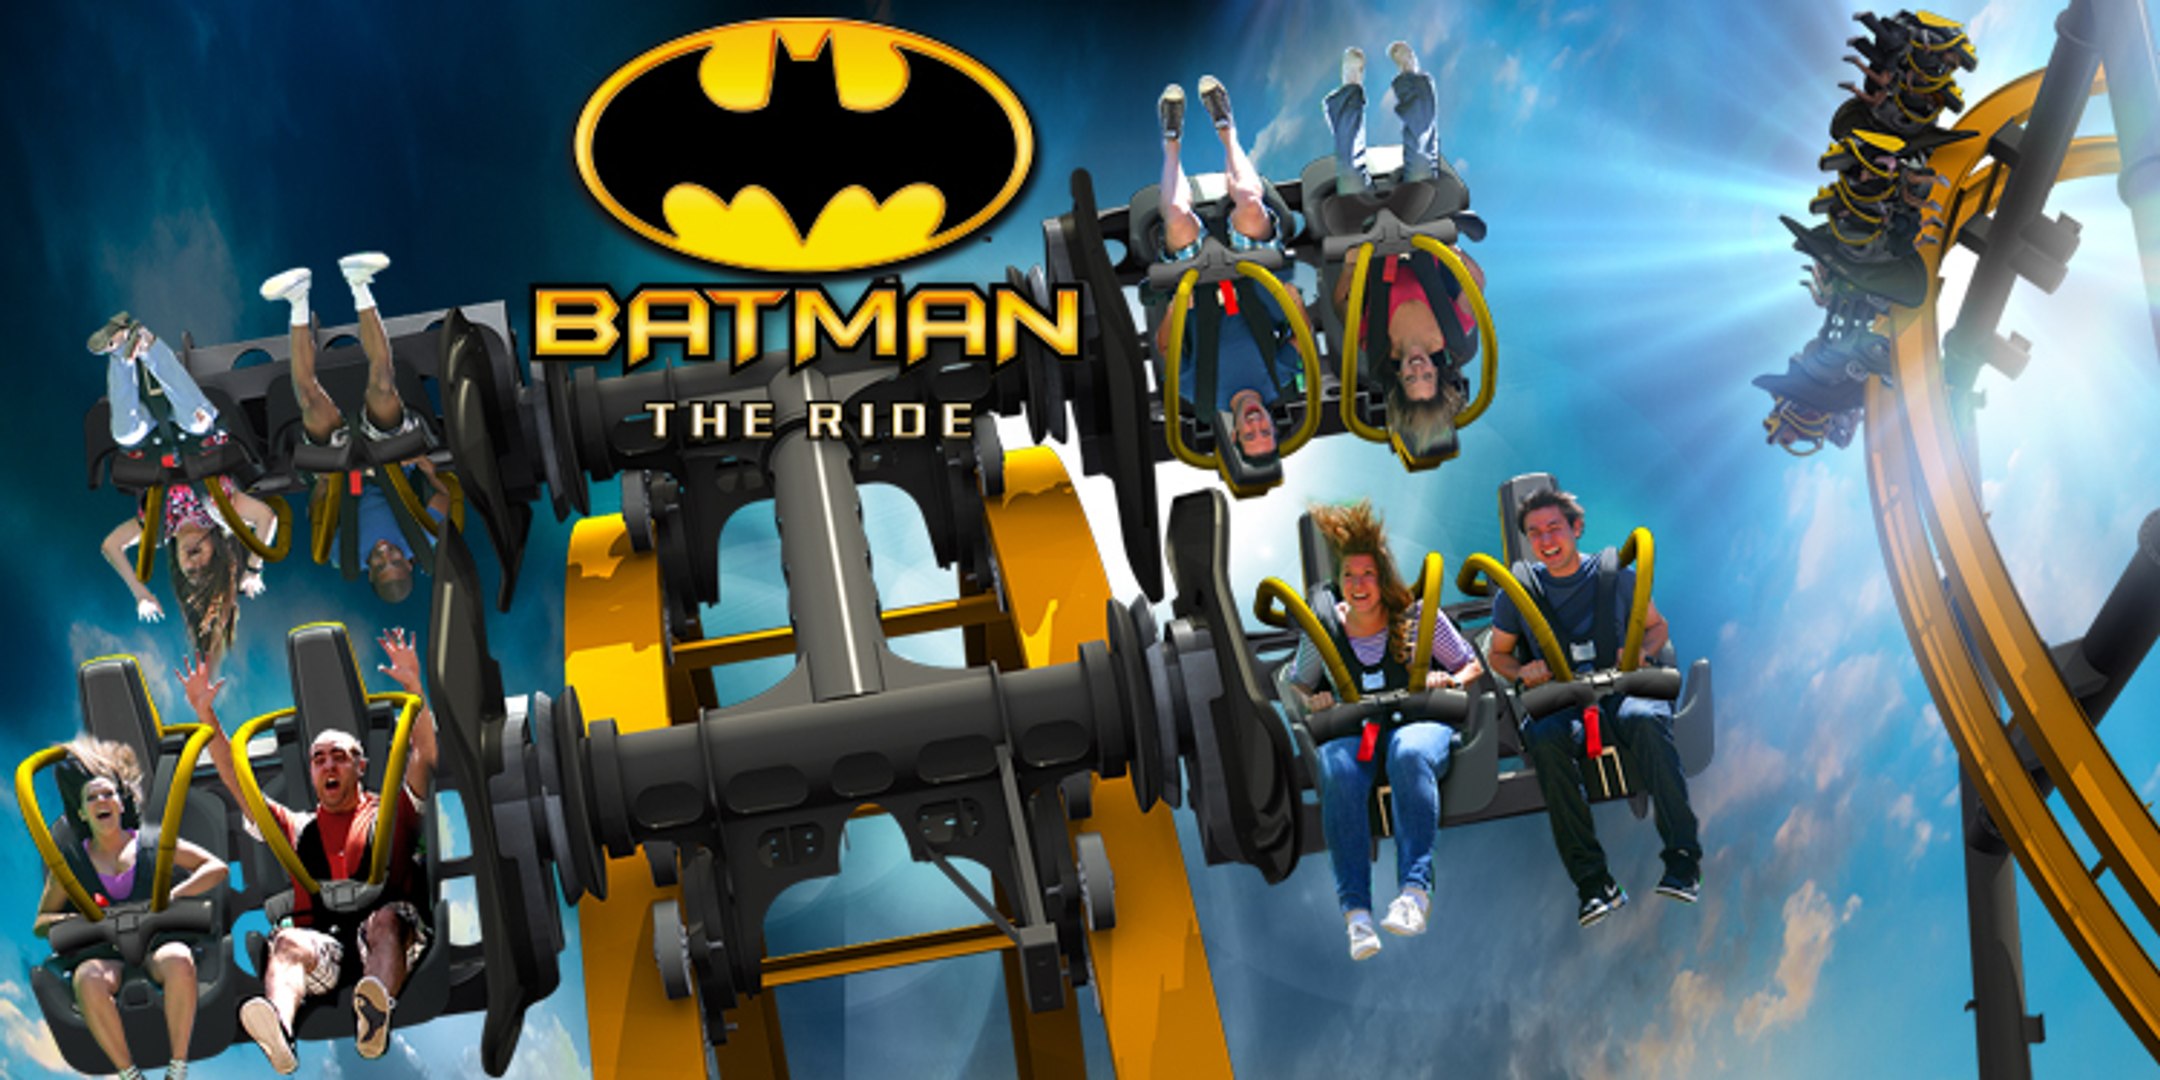 Le manège Batman The Ride 4D - Vidéo Dailymotion